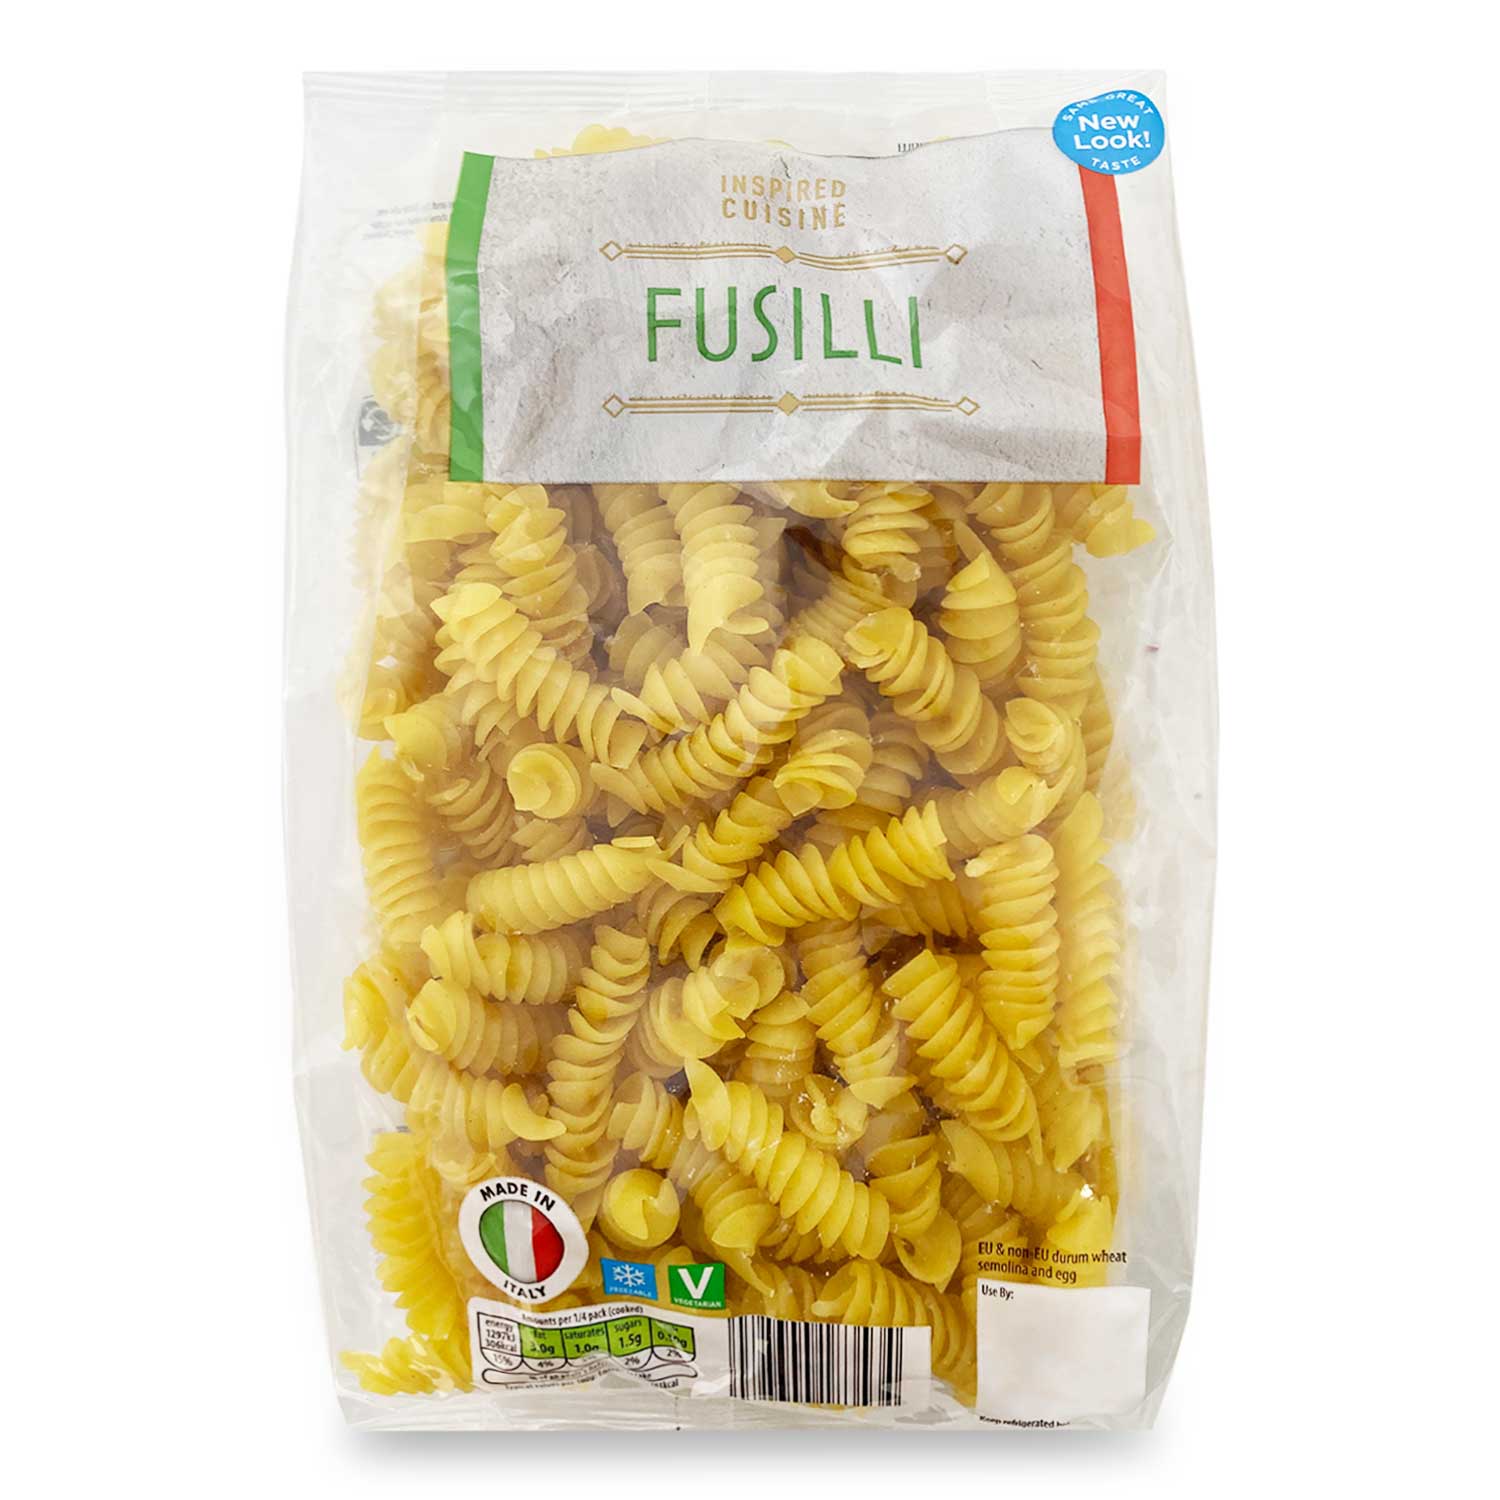 Inspired Cuisine Fusilli Pasta 500g | ALDI